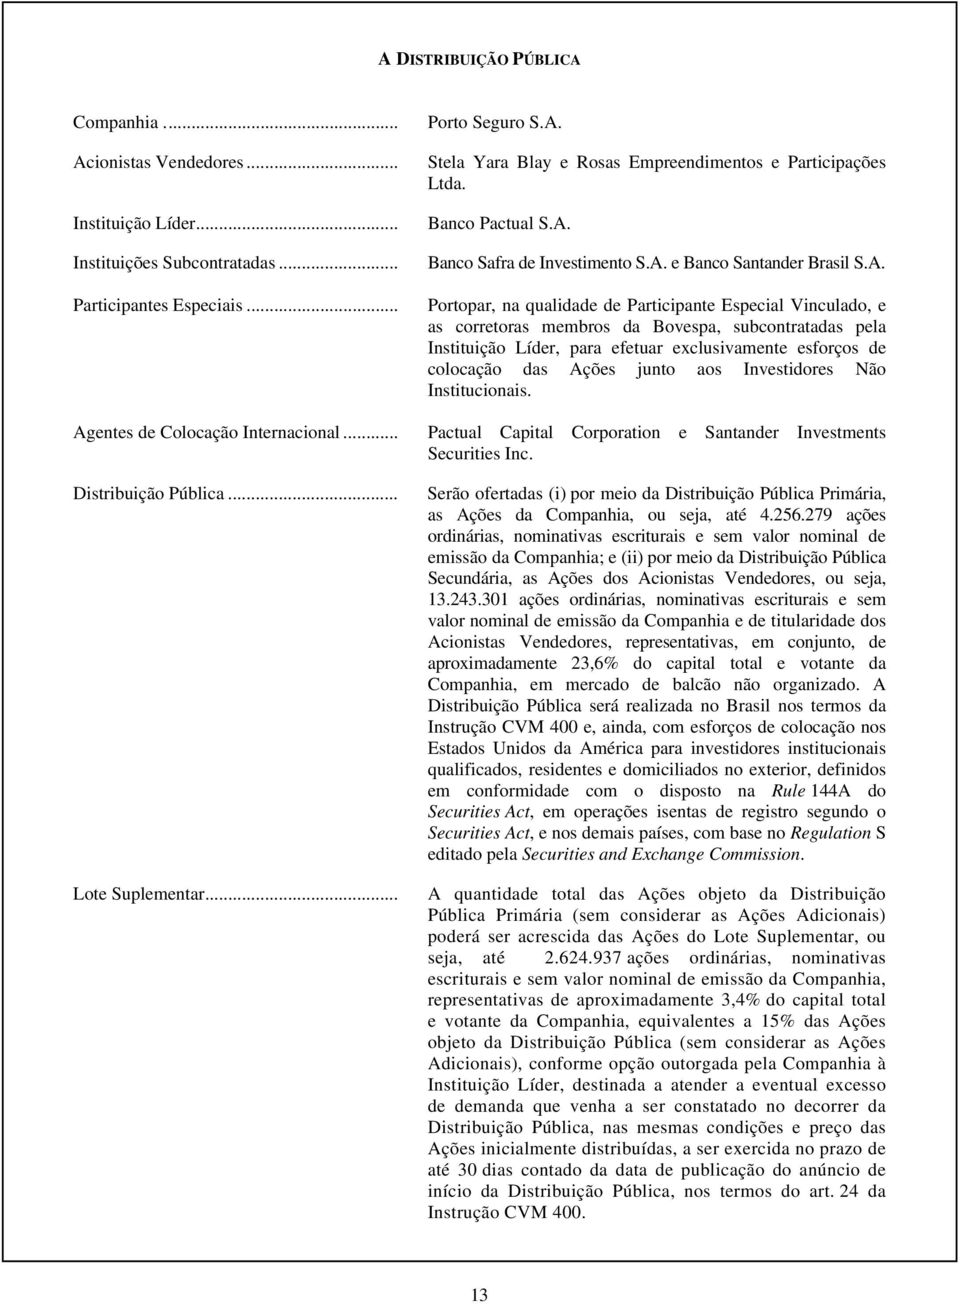 Stela Yara Blay e Rosas Empreendimentos e Participações Ltda. Banco Pactual S.A.